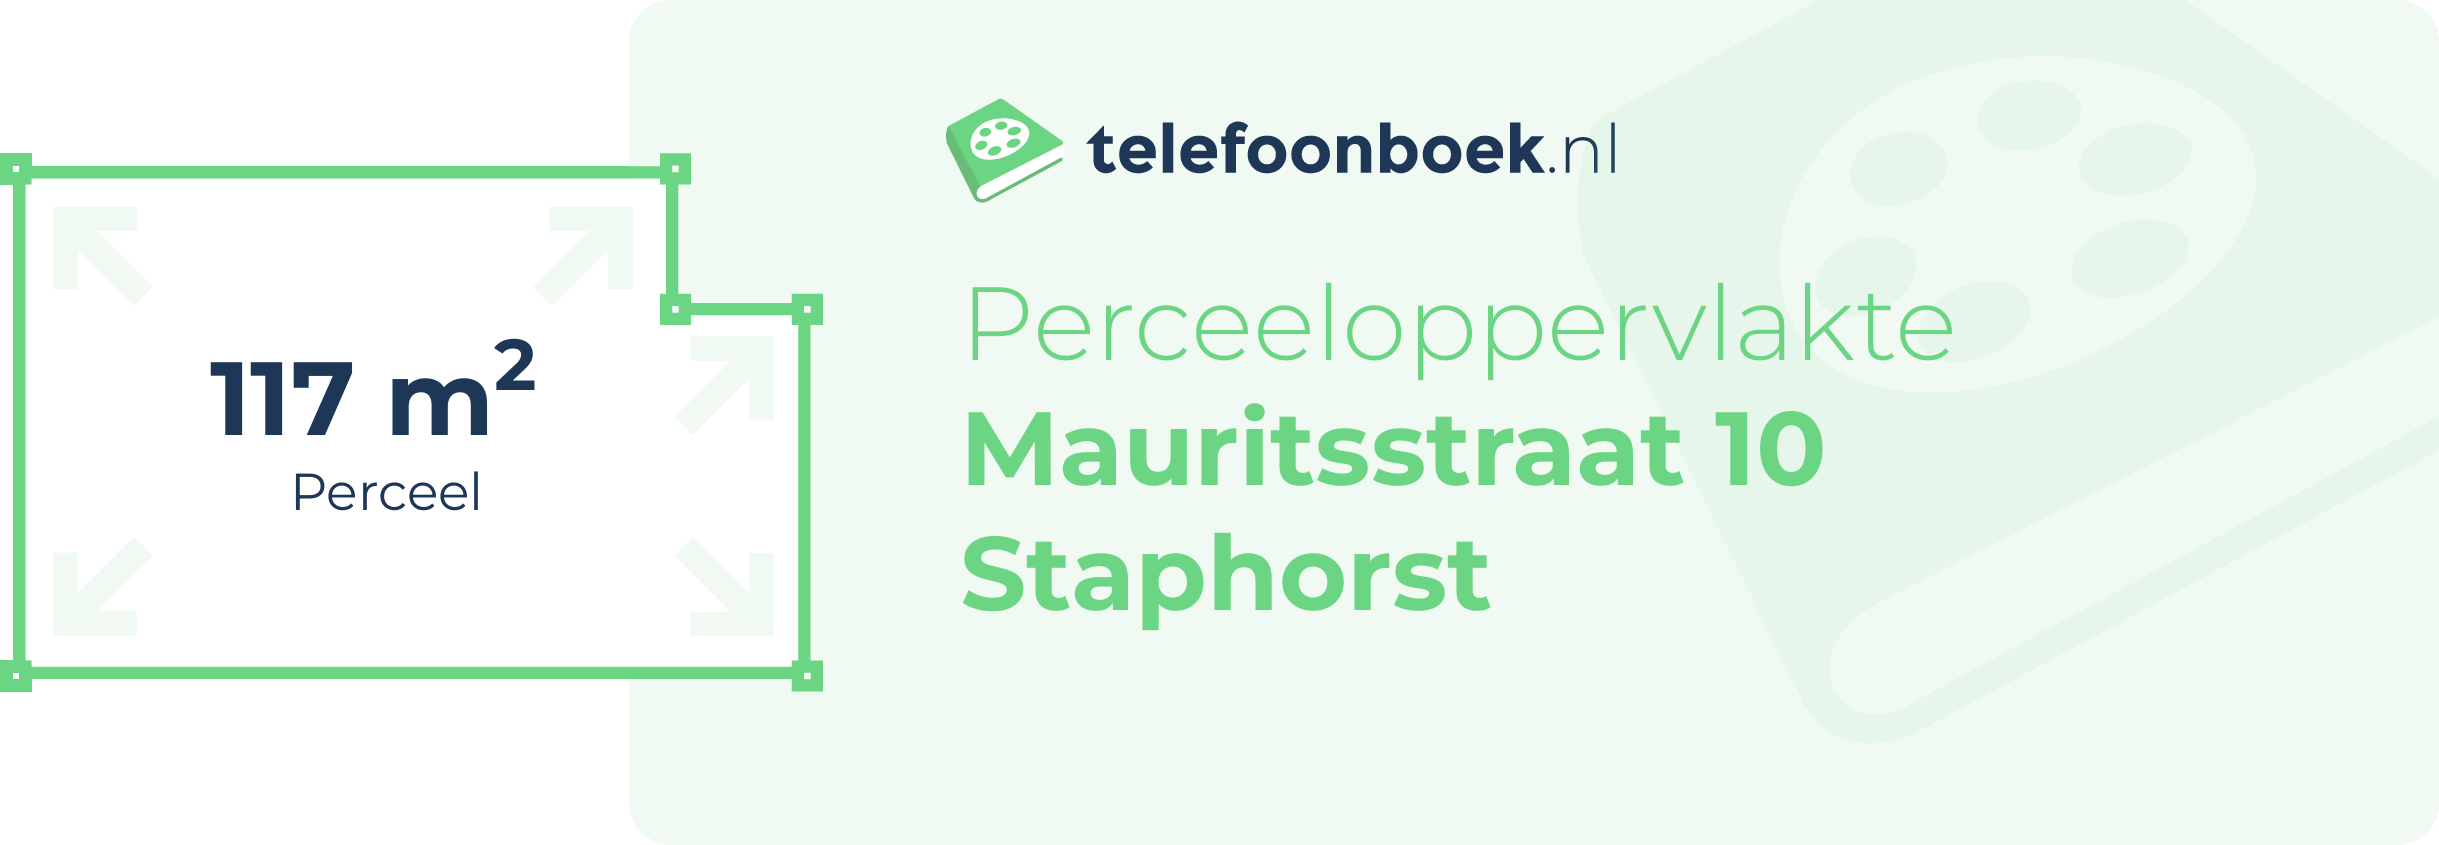 Perceeloppervlakte Mauritsstraat 10 Staphorst